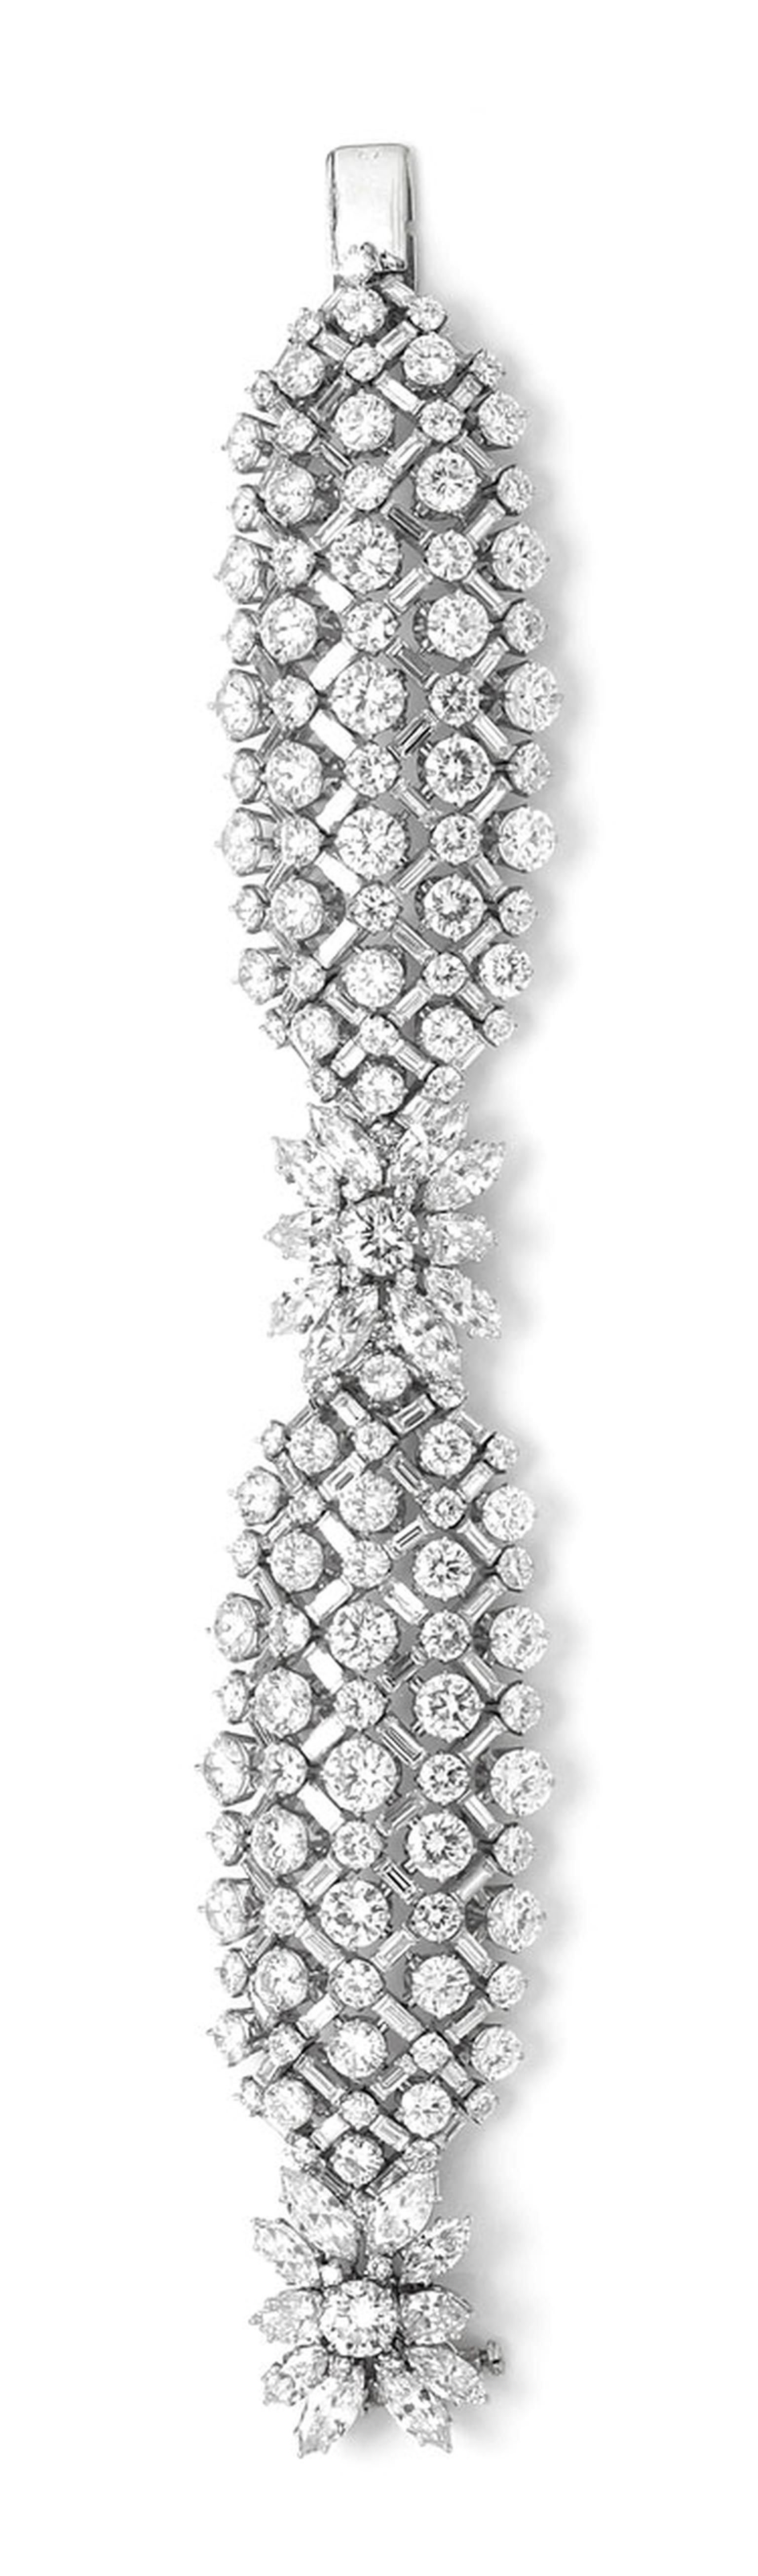 Harry-Winston-vintage-1959-diamond-lattice-bracelet-58ct.jpg